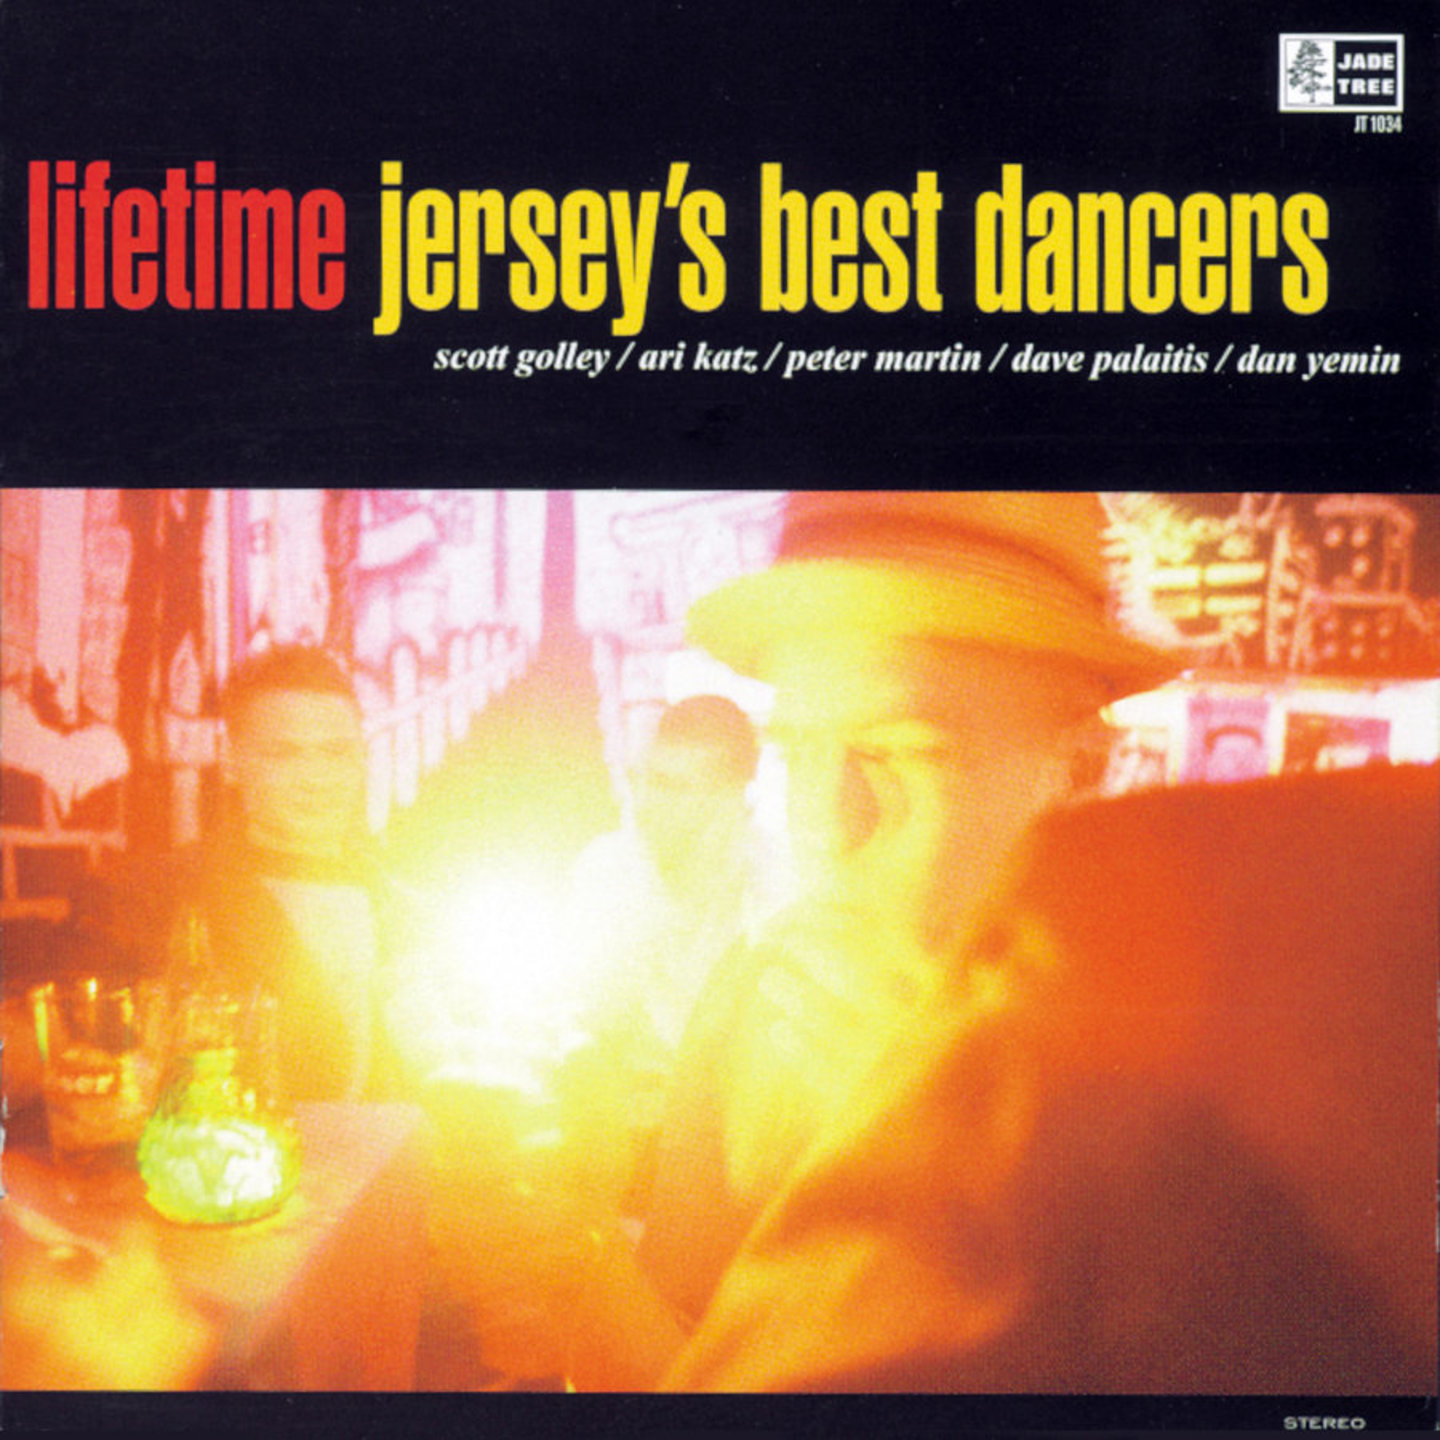 LIFETIME - Jerseys Best Dancers LP Clear With Black Vinyl